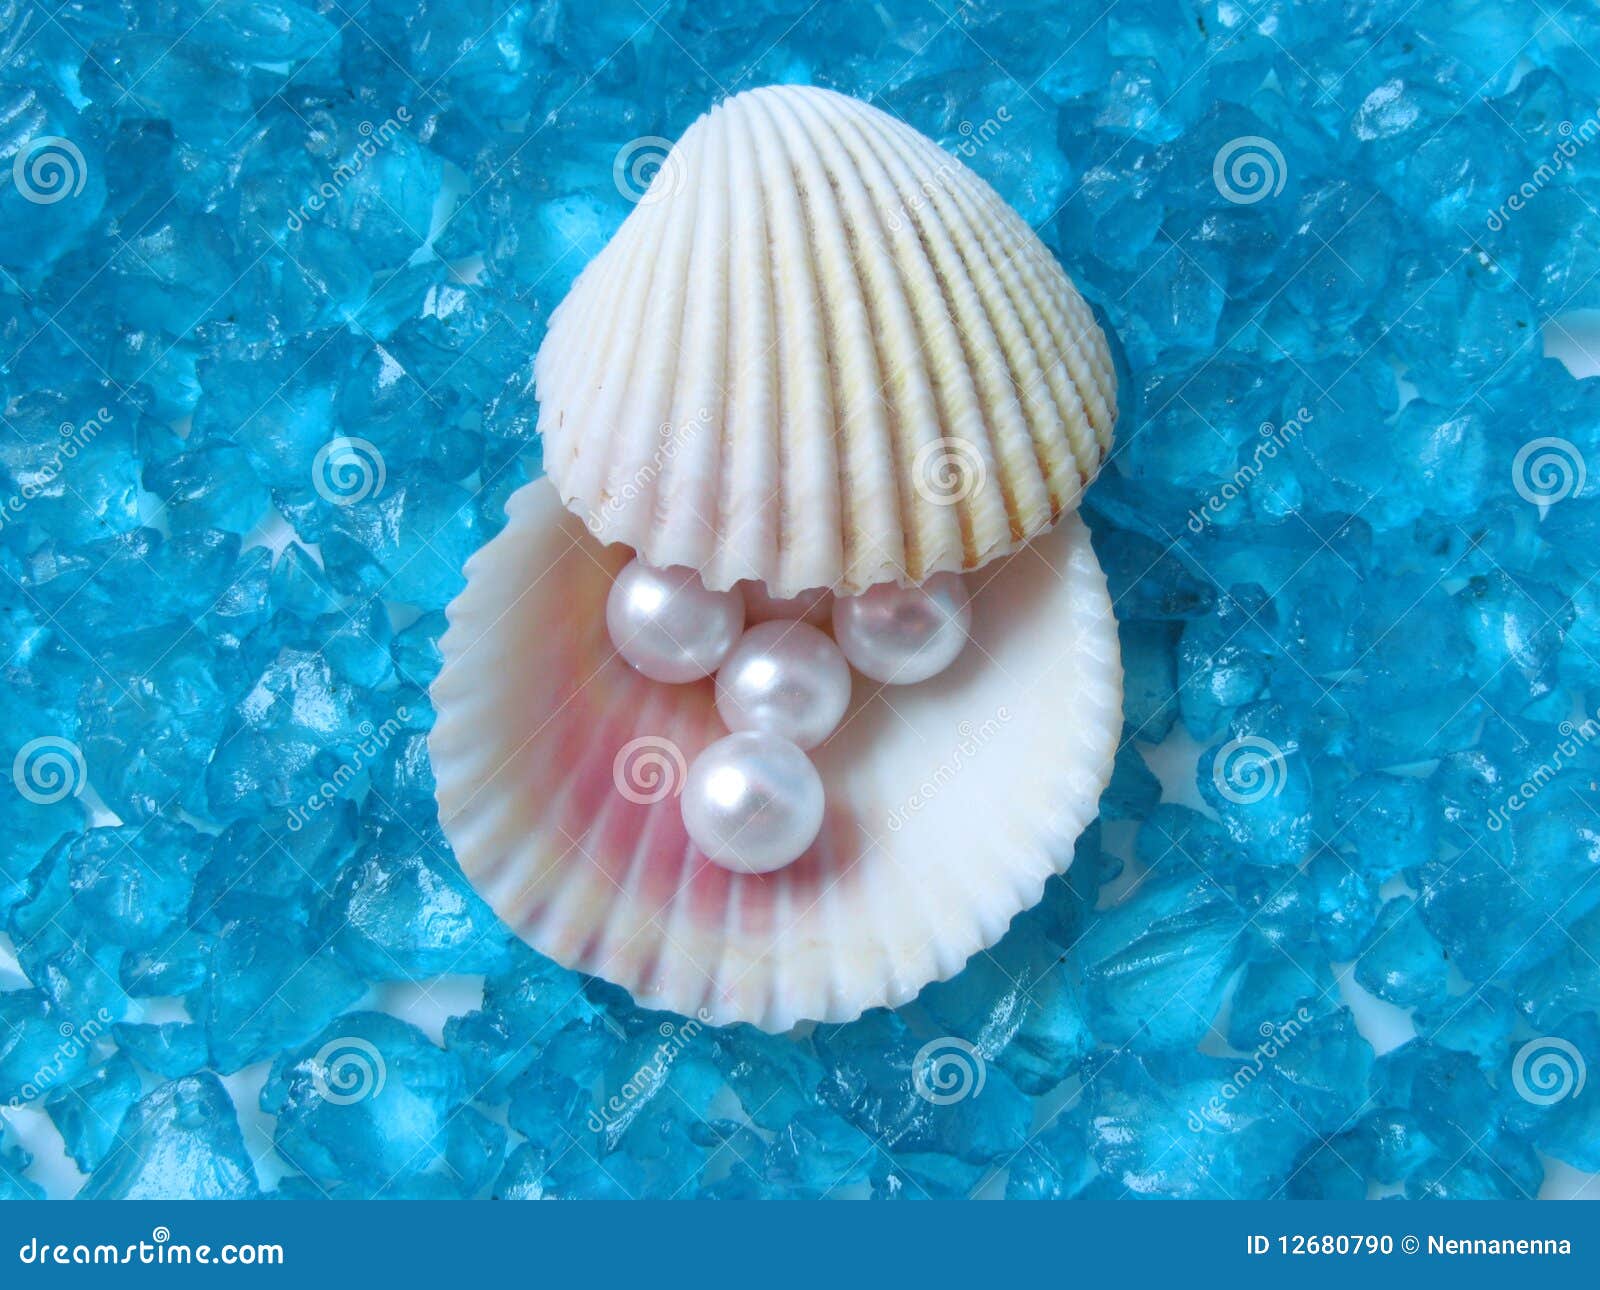 珍珠壳 库存照片. 图片 包括有 图象, 坎昆, 贝壳, 蓝色, 概念, 海滨, 手段, 珠宝, 火箭筒 - 49458692